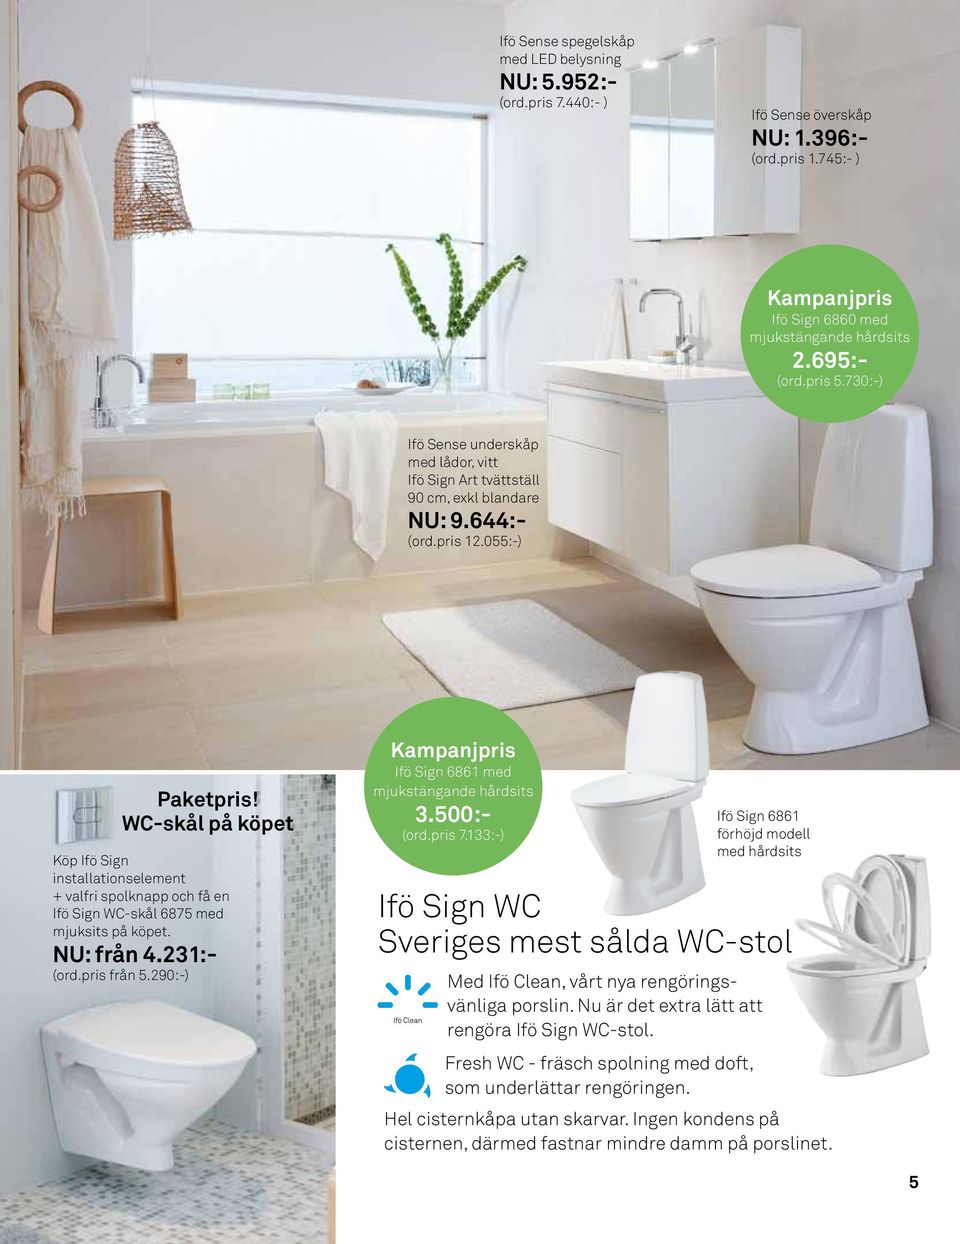 WC-skål på köpet Köp Ifö Sign installationselement + valfri spolknapp och få en Ifö Sign WC-skål 6875 med mjuksits på köpet. NU: från 4.231:- (ord.pris från 5.